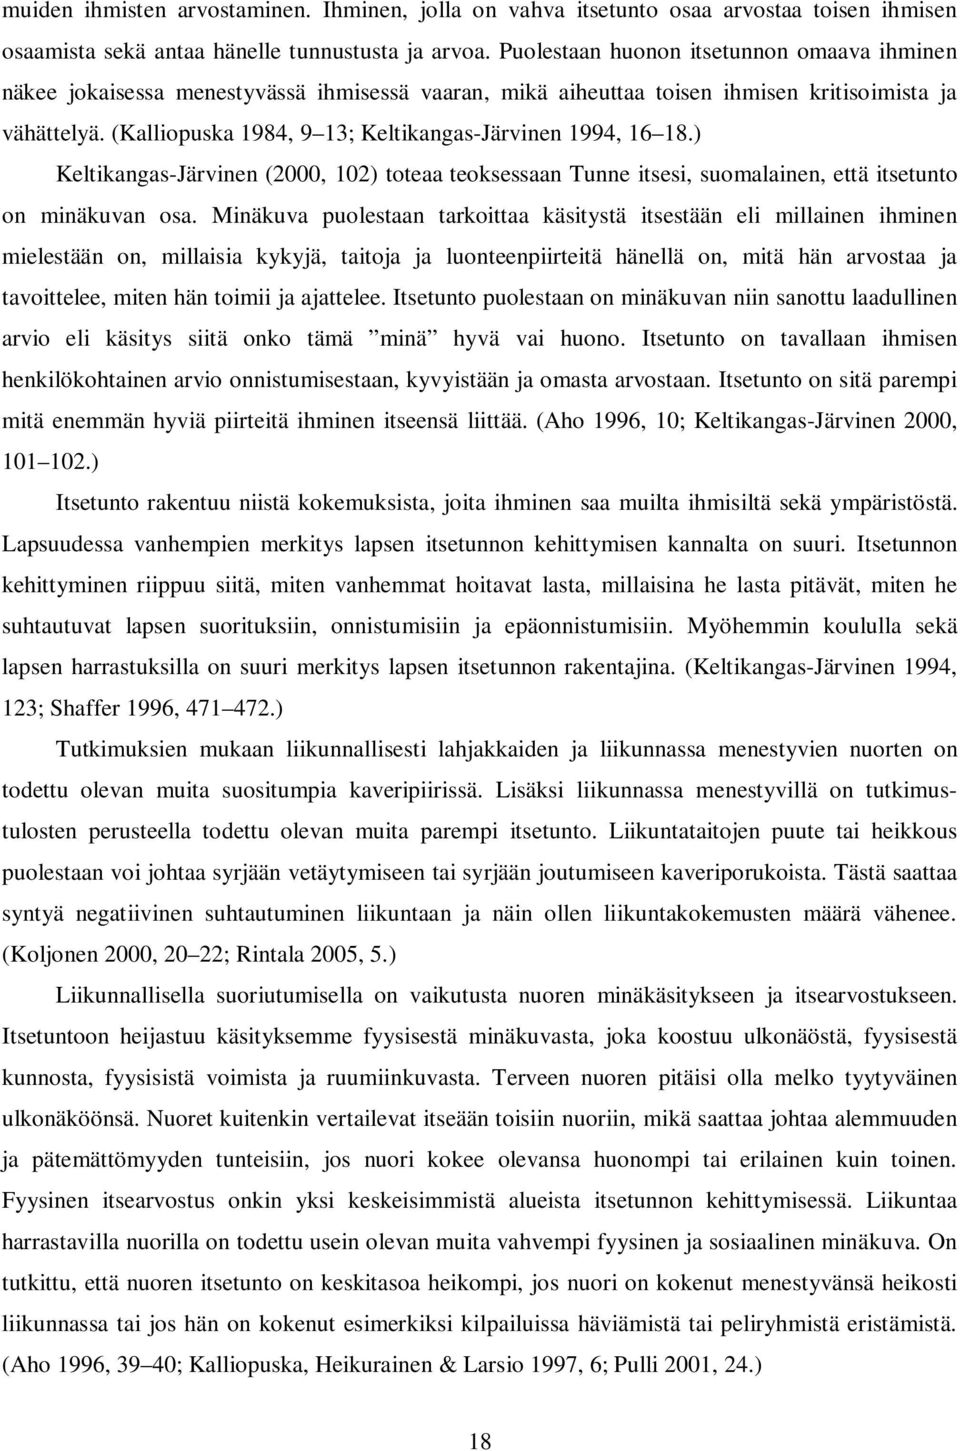 (Kalliopuska 1984, 9 13; Keltikangas-Järvinen 1994, 16 18.) Keltikangas-Järvinen (2000, 102) toteaa teoksessaan Tunne itsesi, suomalainen, että itsetunto on minäkuvan osa.